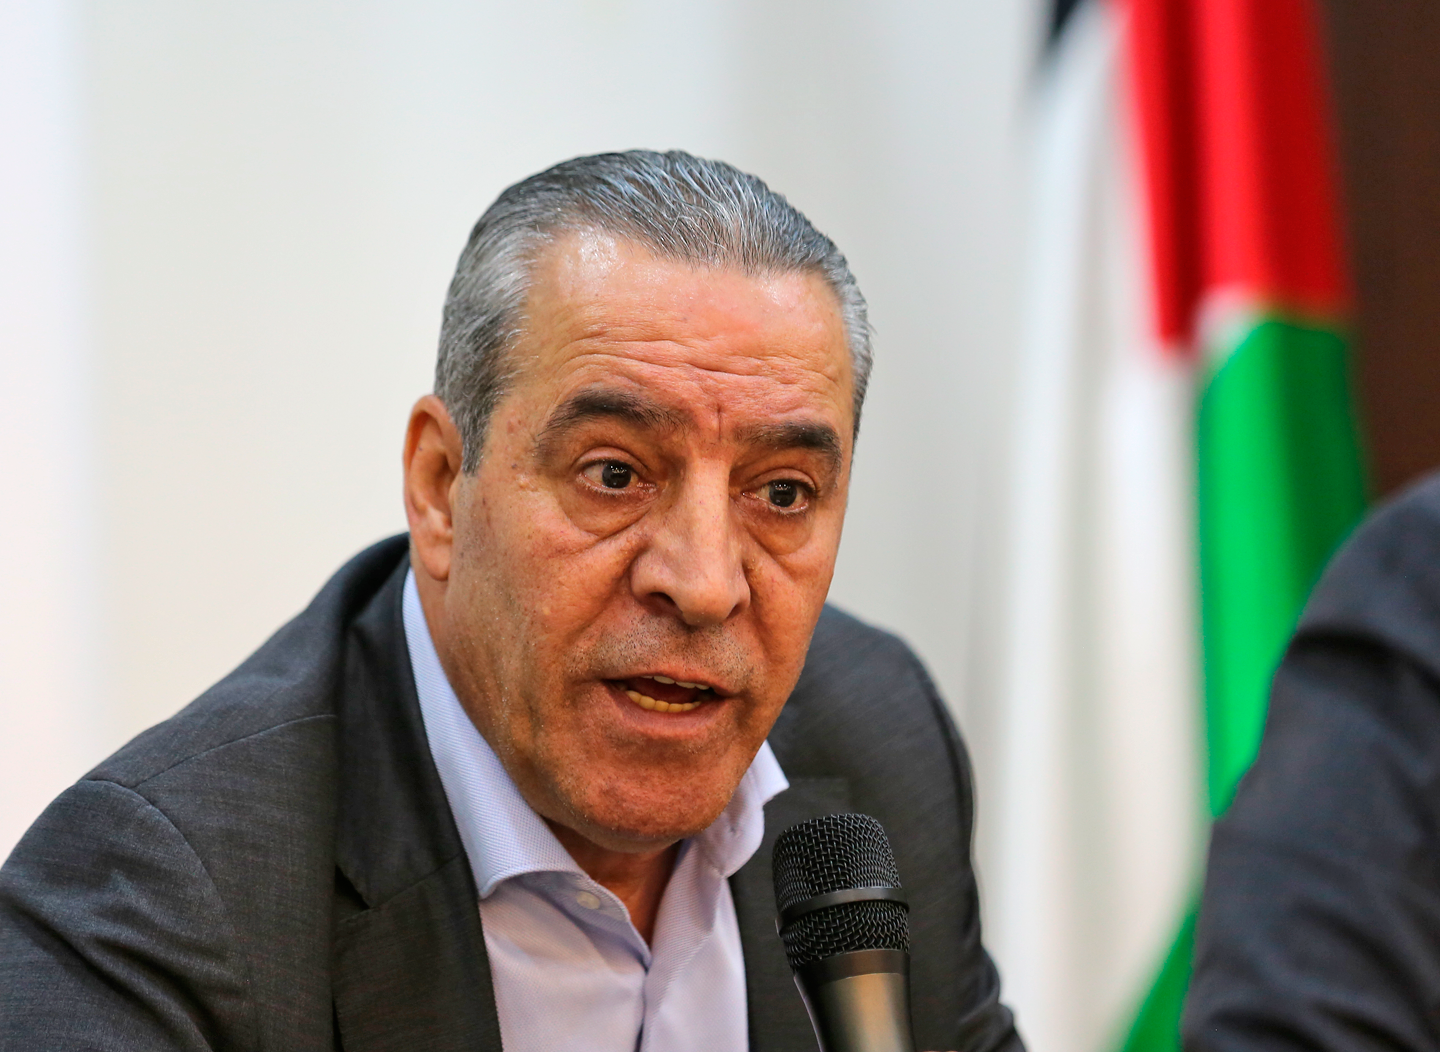 الشيخ: لأن إسرائيل طالبت بعدم إرسال الأموال إلى قطاع غزة، فإن القيادة ترفض قبول "التخليص".